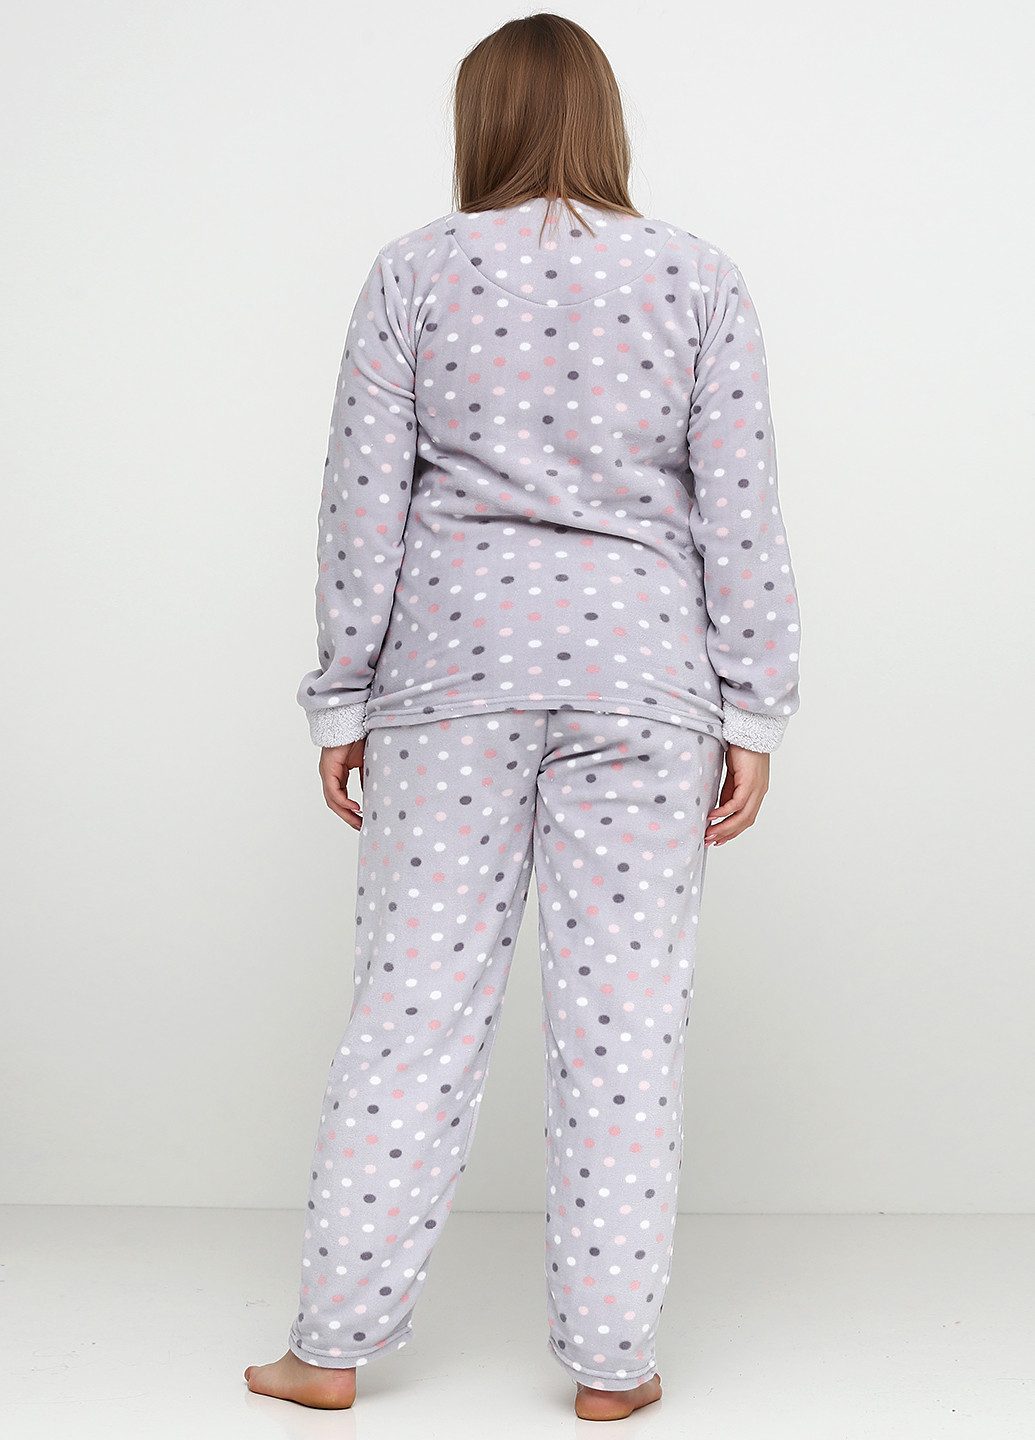 Светло-серая осенняя пижама (свитшот, брюки, маска для сна, тапочки) Pijamoni